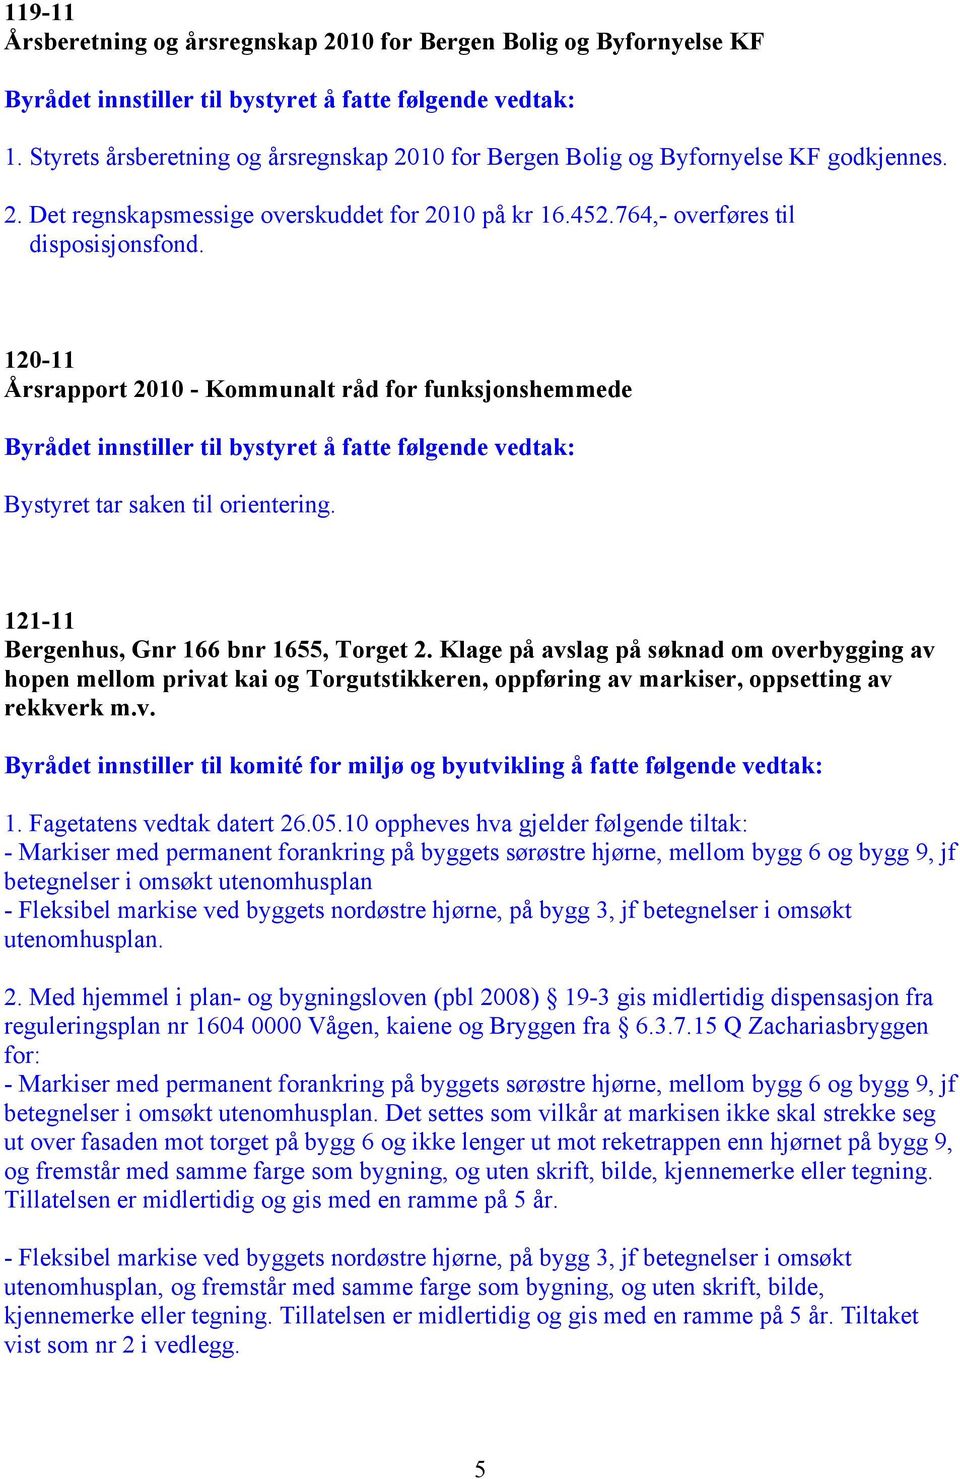 Klage på avslag på søknad om overbygging av hopen mellom privat kai og Torgutstikkeren, oppføring av markiser, oppsetting av rekkverk m.v. 1. Fagetatens vedtak datert 26.05.